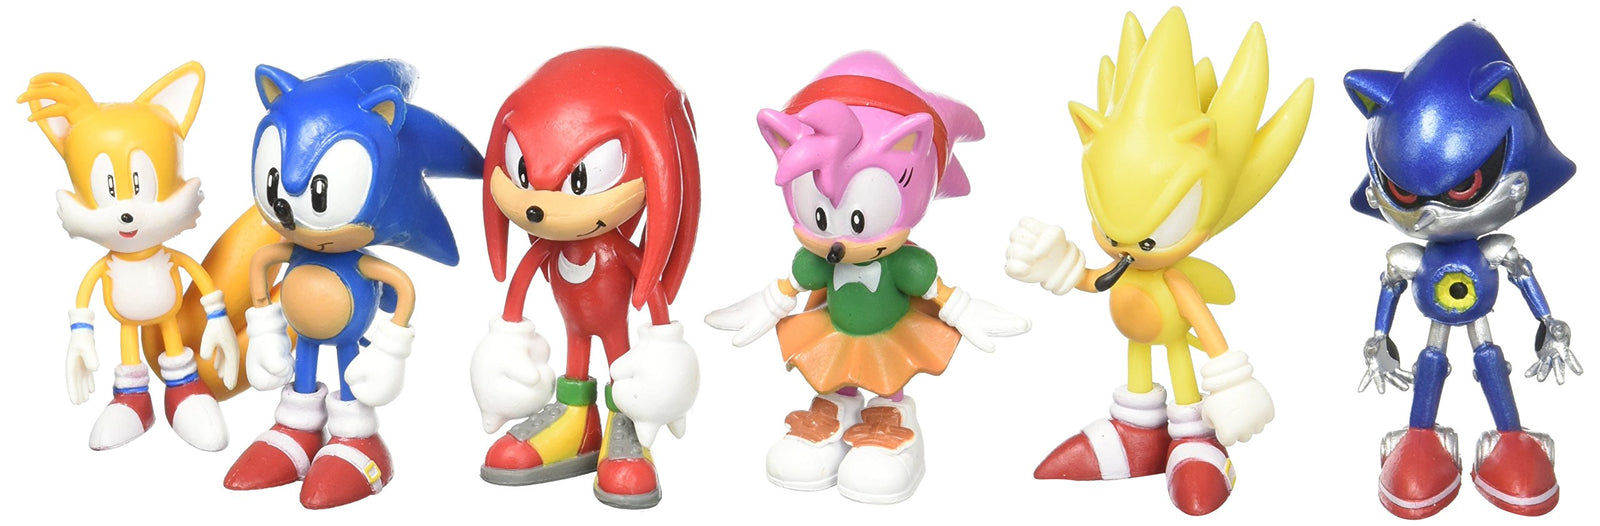 Sonic The Hedgehog Action Figure (6pcs-Set) [Toy]